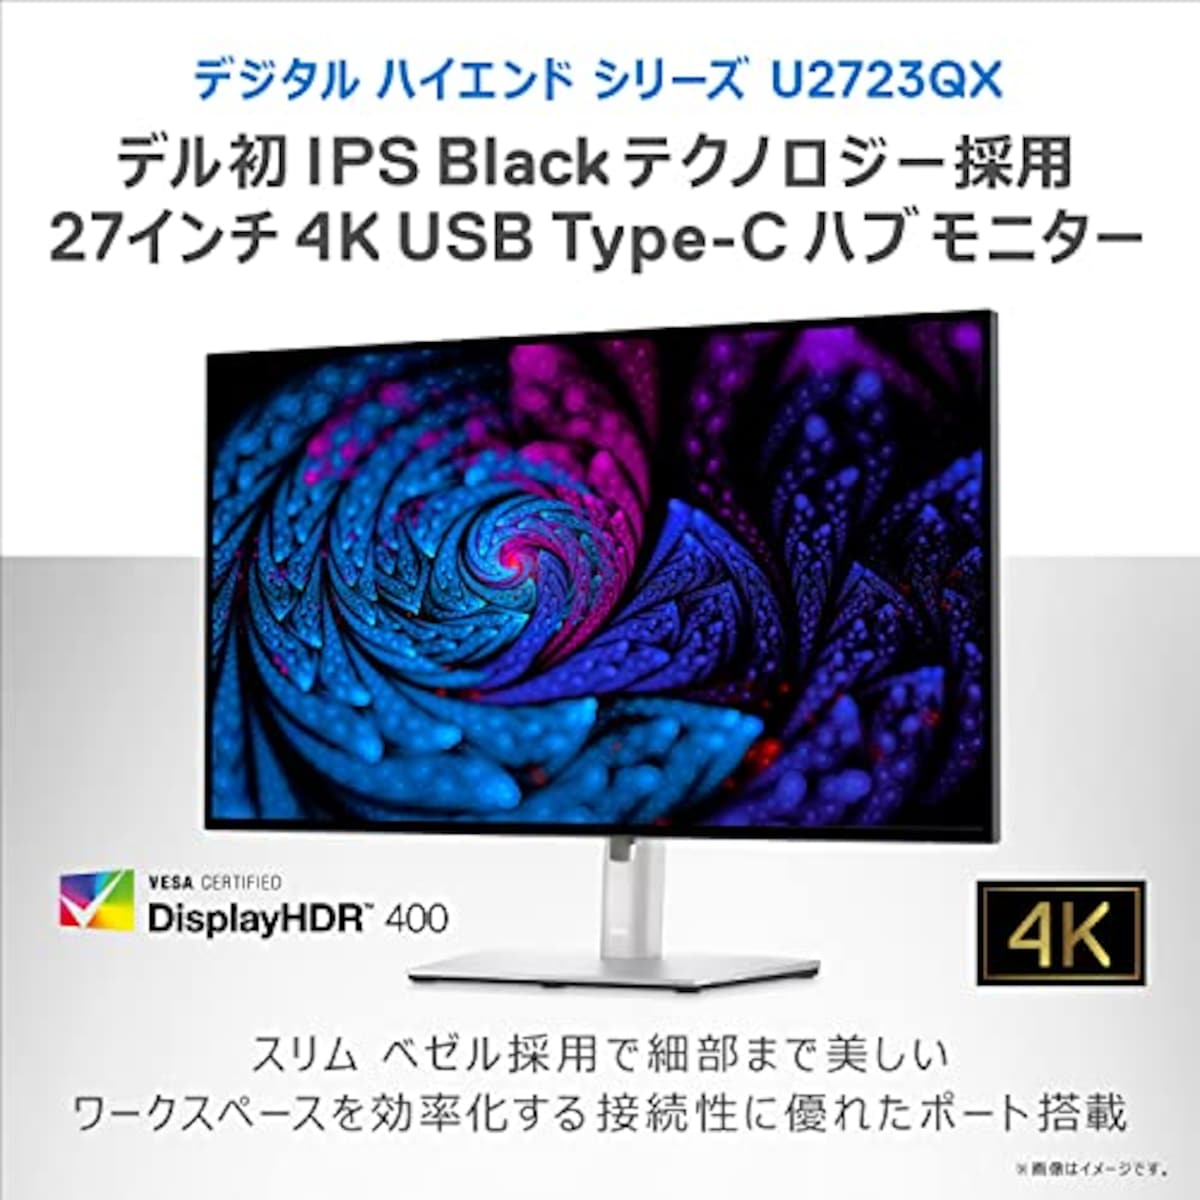  【Amazon.co.jp限定】Dell U2723QX 27インチ 4K ハブモニター(3年間無輝点交換保証/IPS Black・非光沢/USB Type-C・DP・HDMI/フレームレス/縦横回転・高さ調整/VESA DisplayHDR 400/Rec.709 100%)画像3 